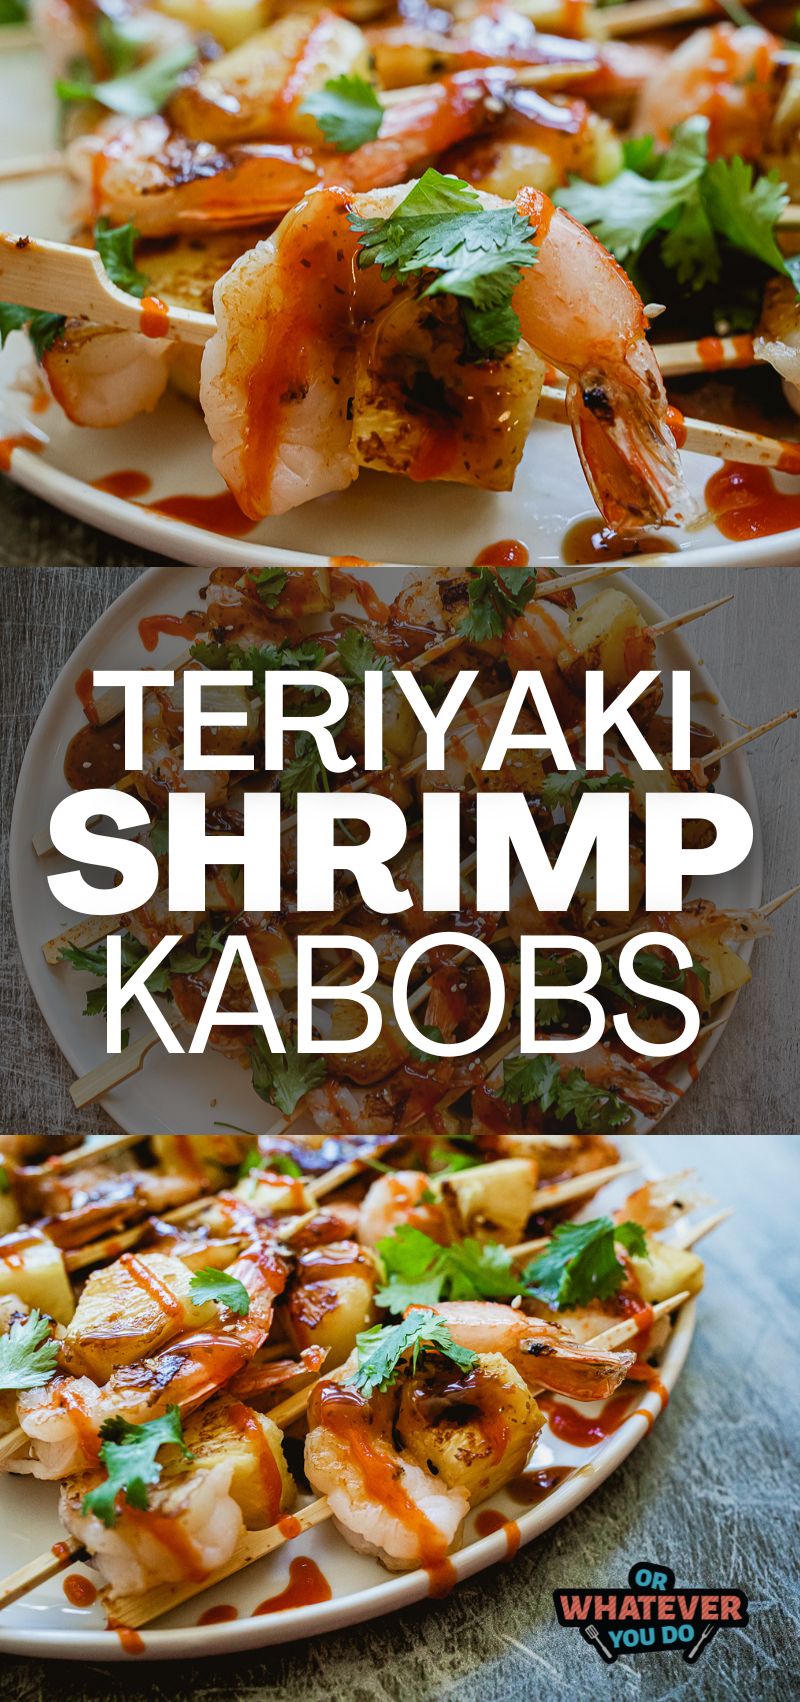 Blackstone Teriyaki Shrimp Kabobs